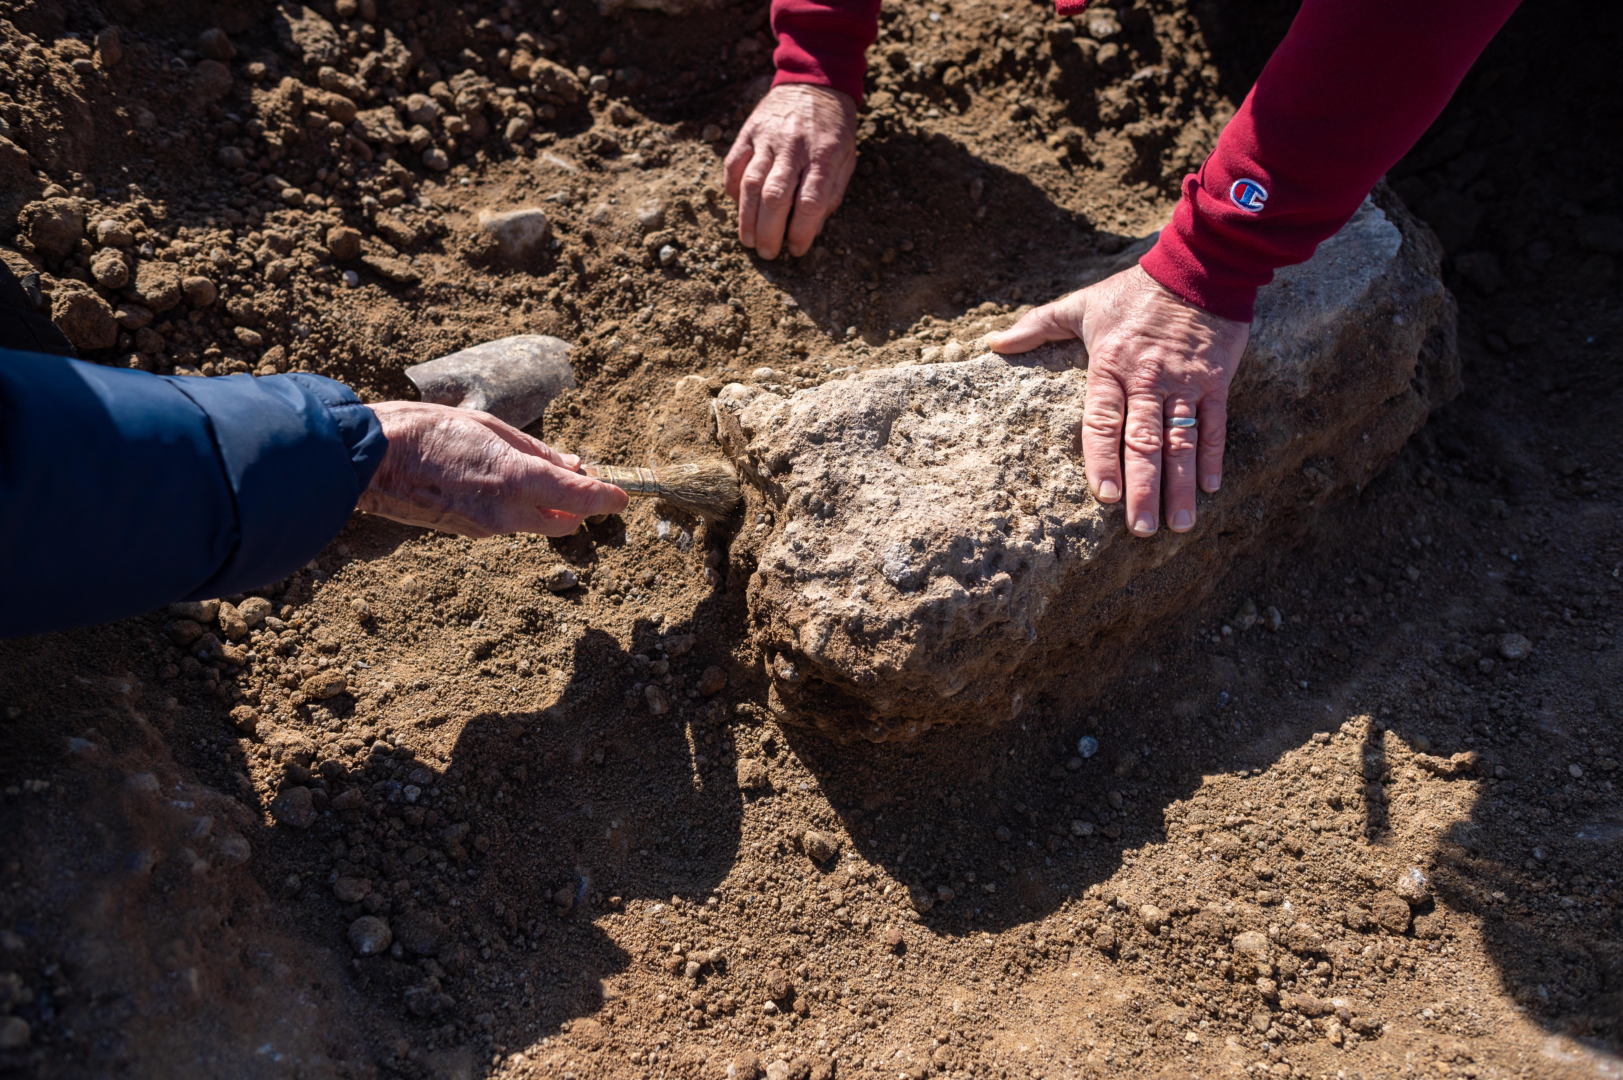 Hands brush soil away from a large bone encased in the soil.